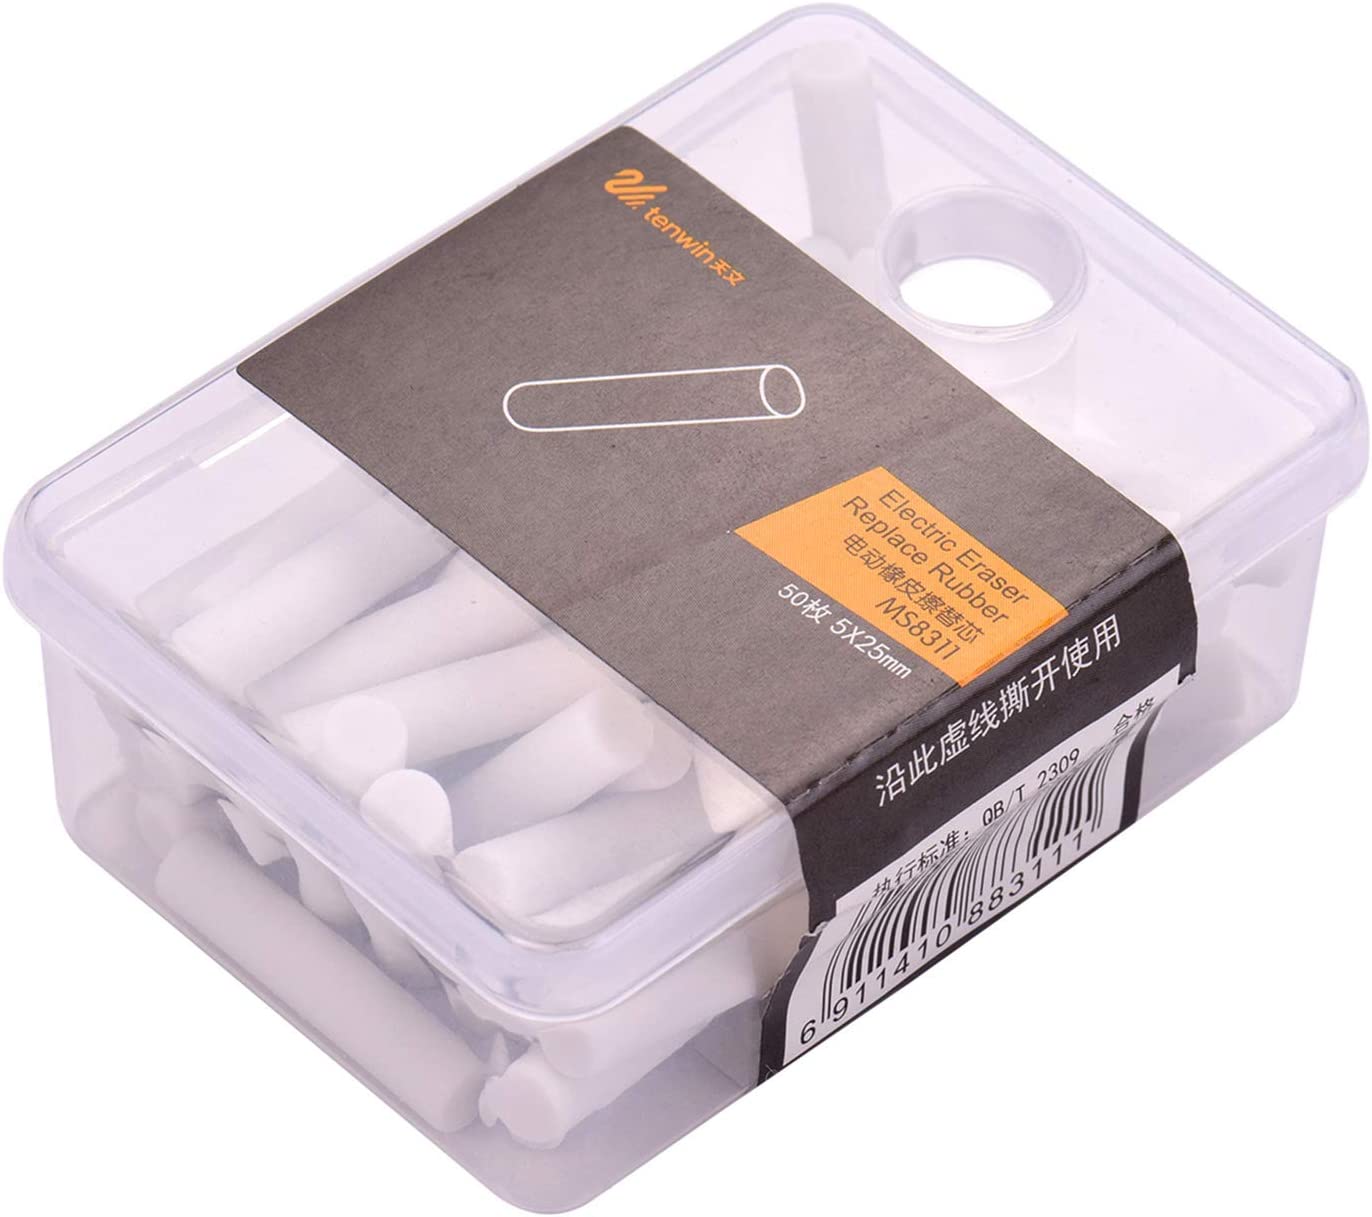 Tenwin Eraser Portable Electric Eraser Refills 50pcs Dia. 5mm Big Eraser Refills